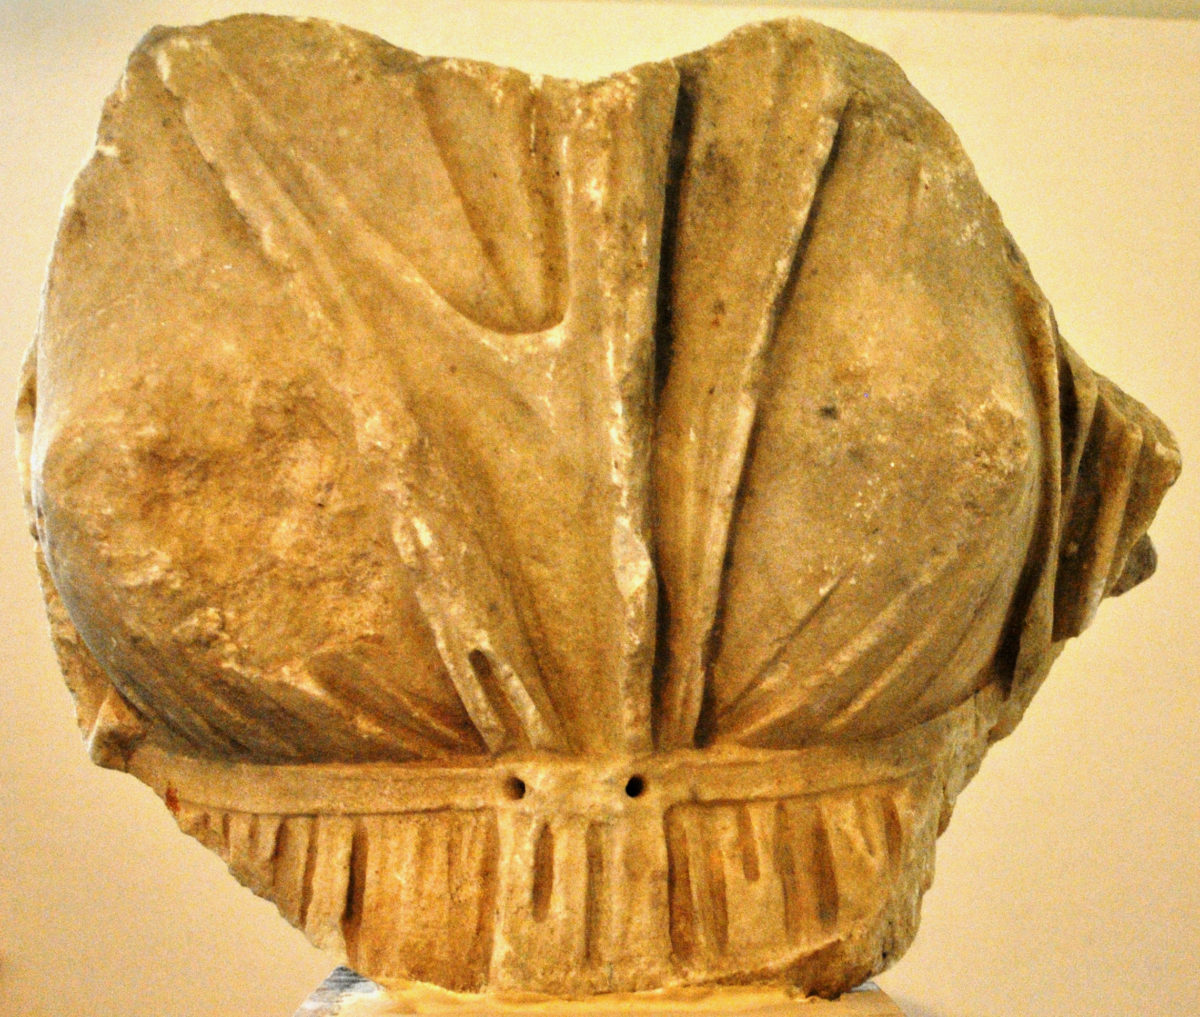 Εικ. 6. Τμήμα γυναικείου κορμού με χιτώνα ψηλά ζωσμένο, β’ μισό του 4ου αι. π.Χ., το οποίο αποδίδεται στο άγαλμα της Υγείας που φιλοτέχνησε ο γλύπτης Σκόπας για το φημισμένο ναό της Αλέας Αθηνάς στην Τεγέα (φωτ.: Εφορεία Αρχαιοτήτων Αρκαδίας).